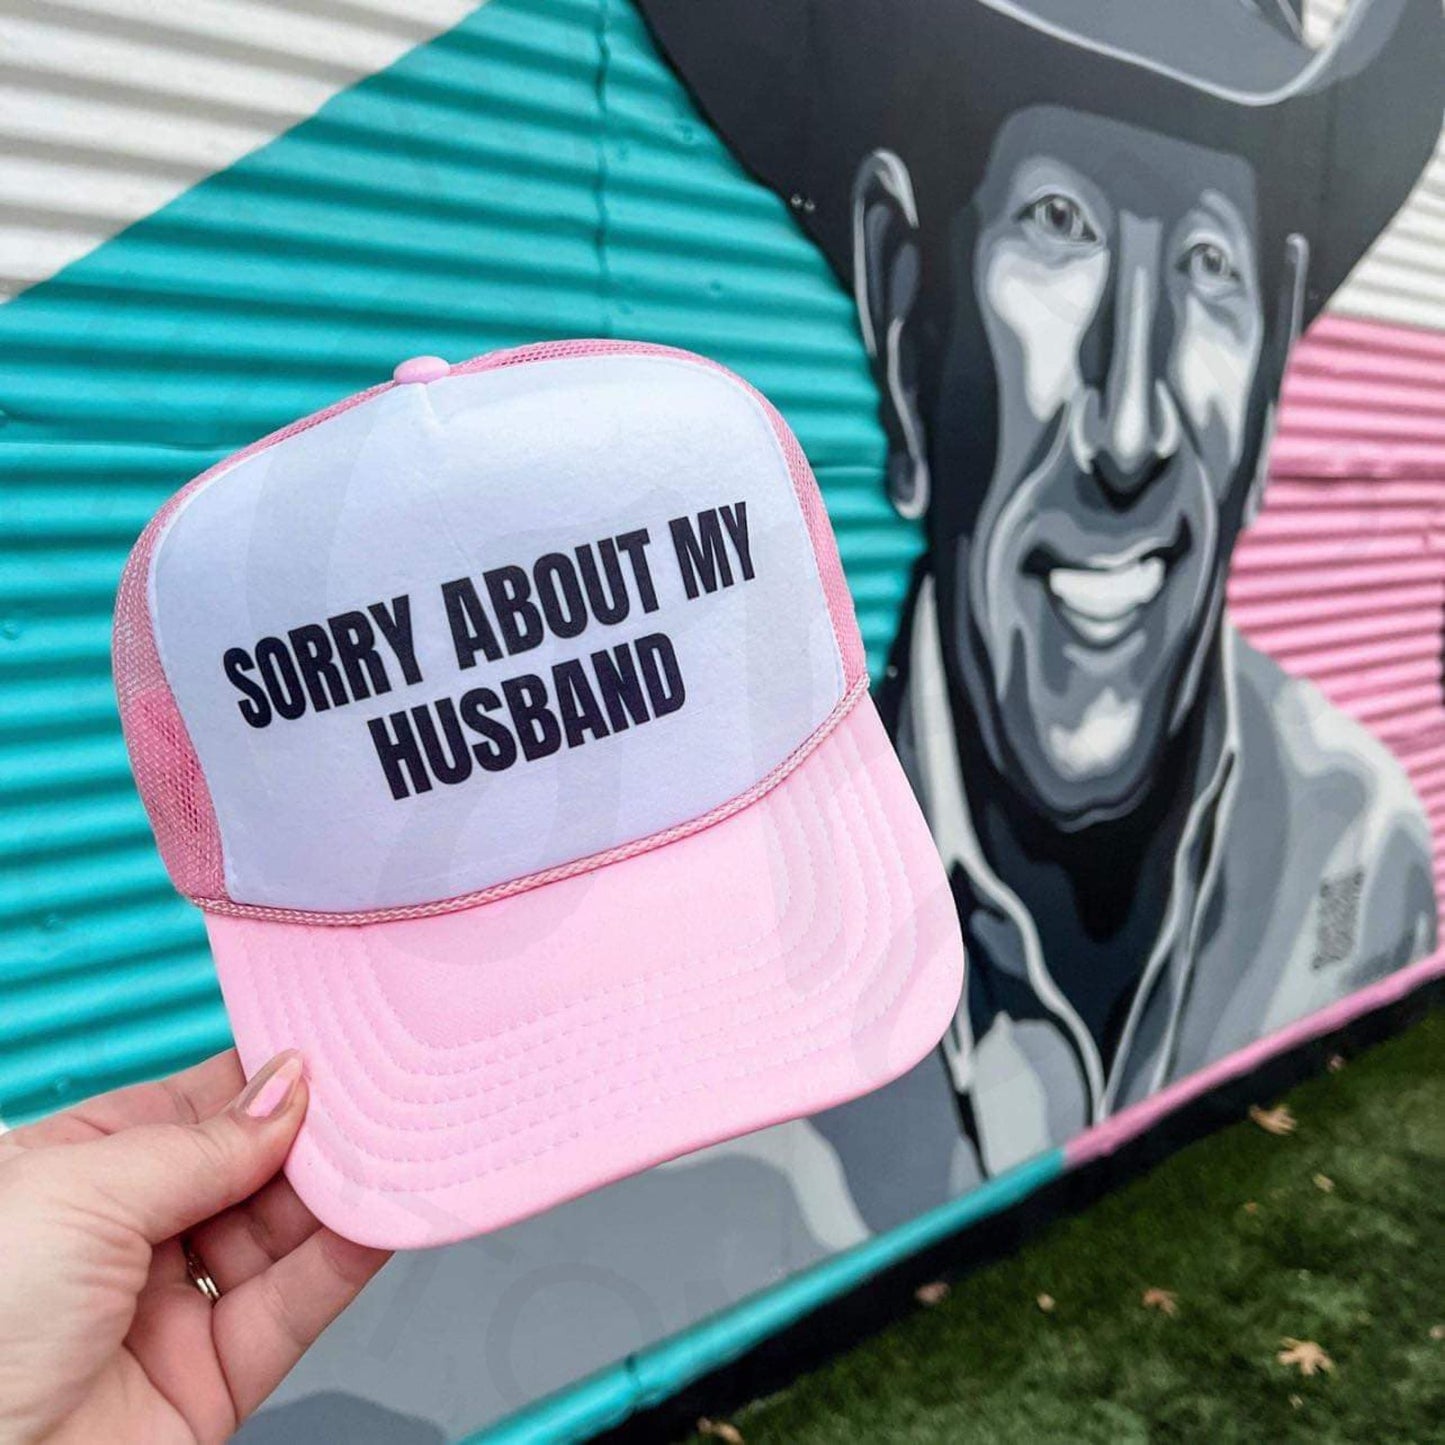 Sorry About My Husband Foam Trucker Hat